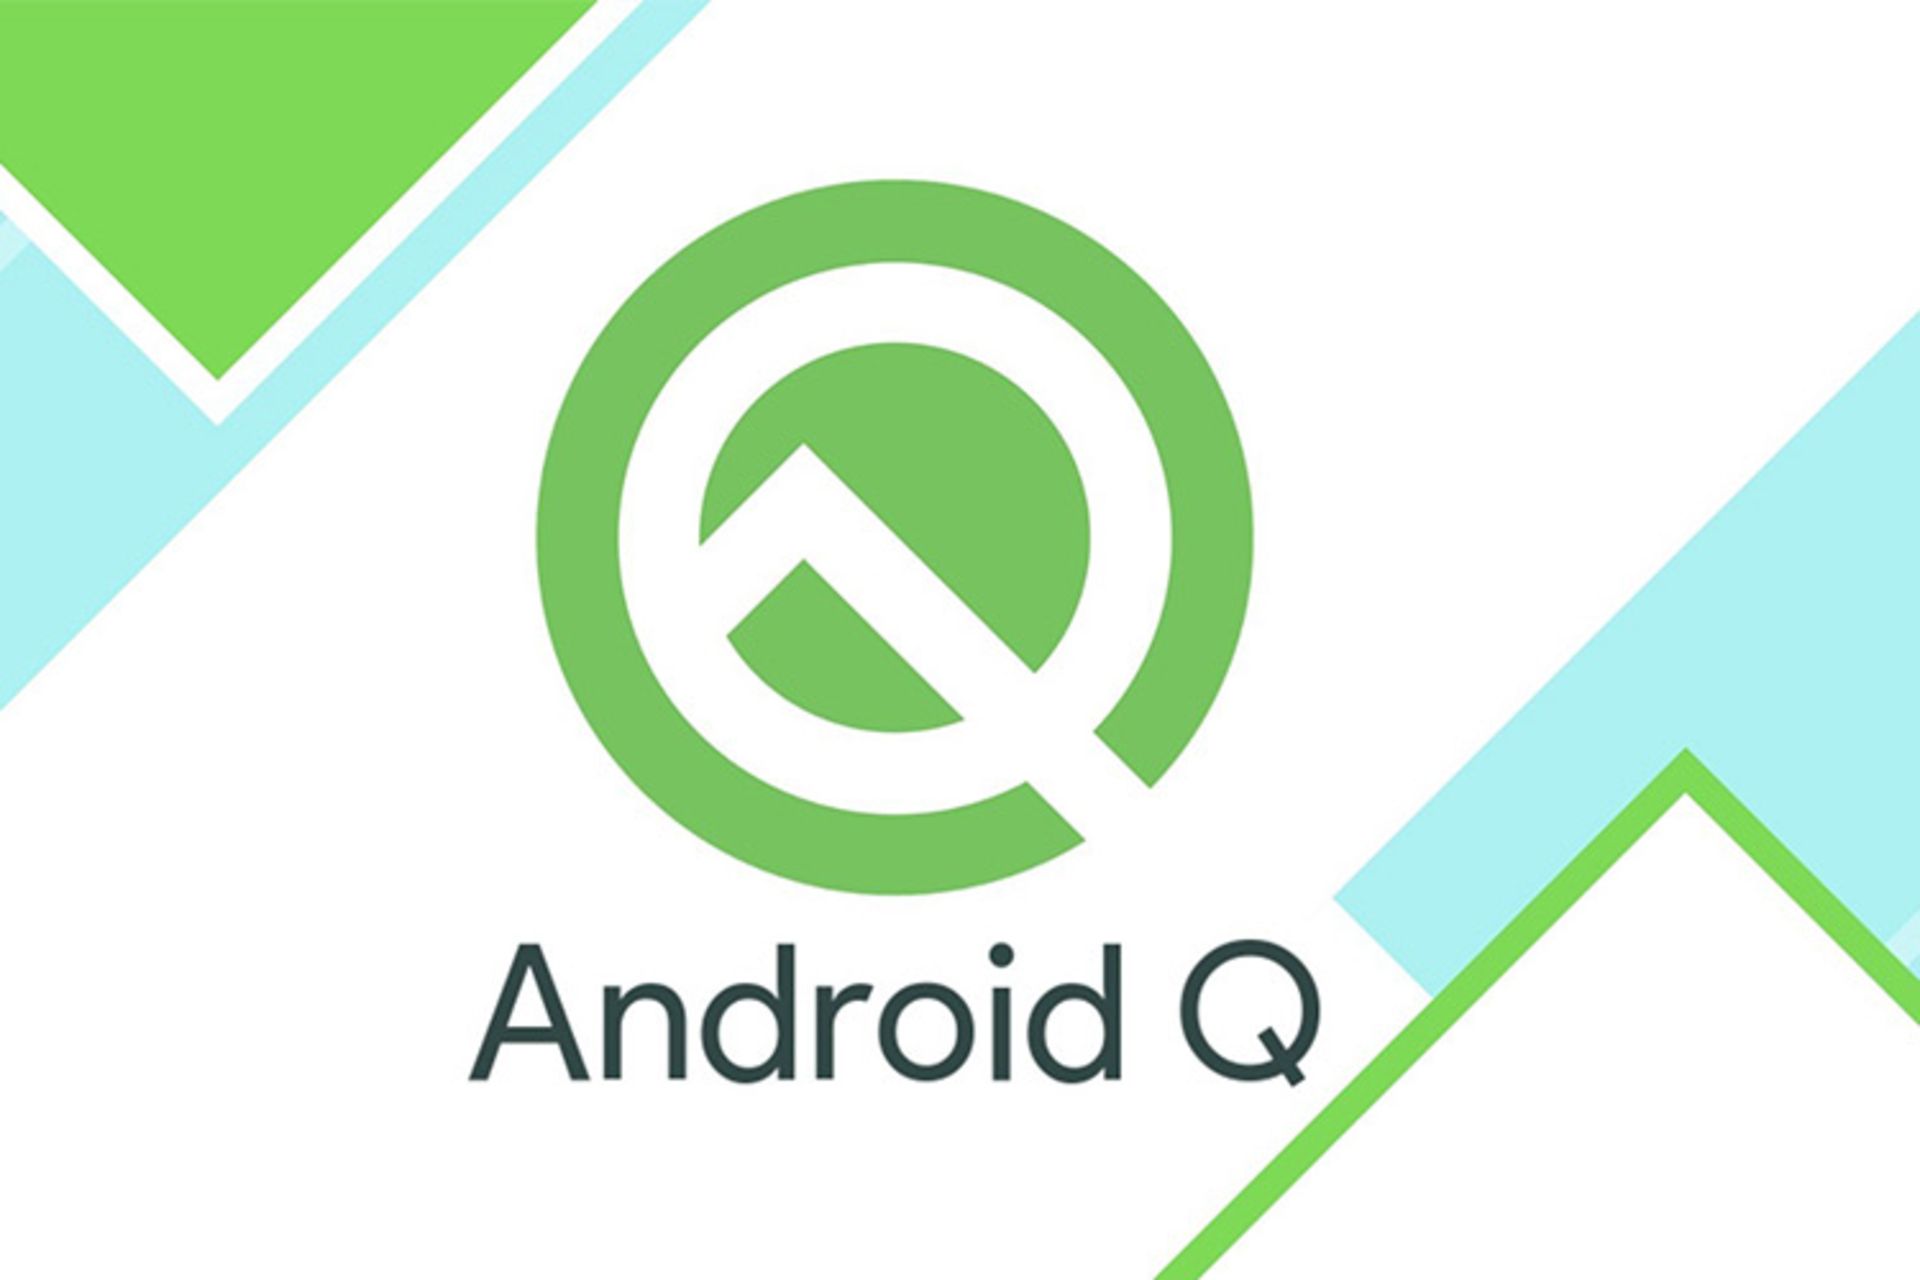 مرجع متخصصين ايران Android Q / اندرويد كيو